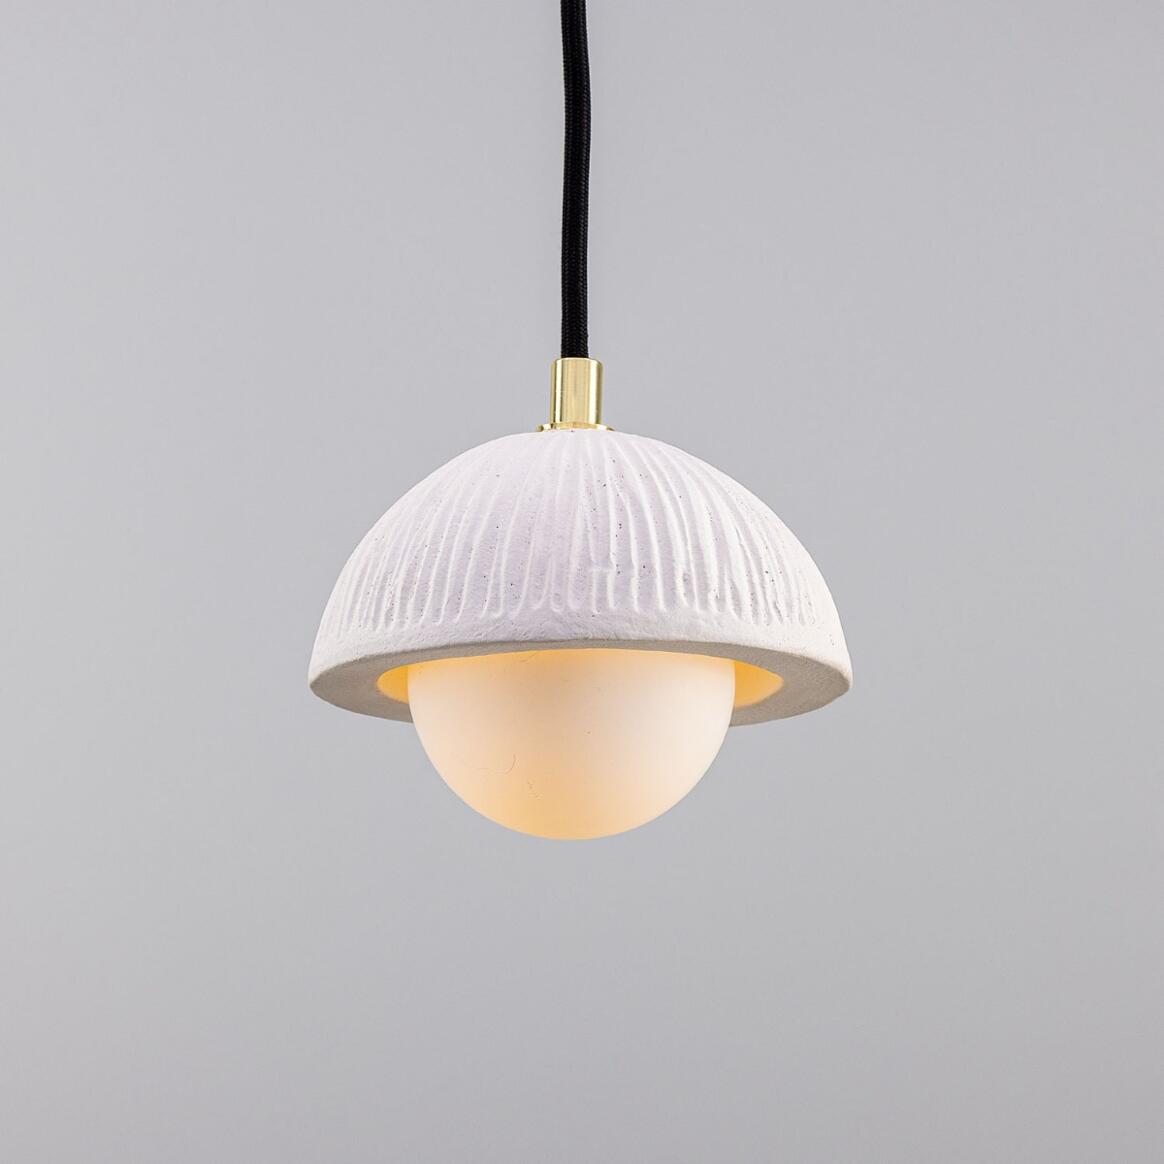 Ferox Small Ceramic Dome Pendant Light 5.5", Matte White Striped main product image